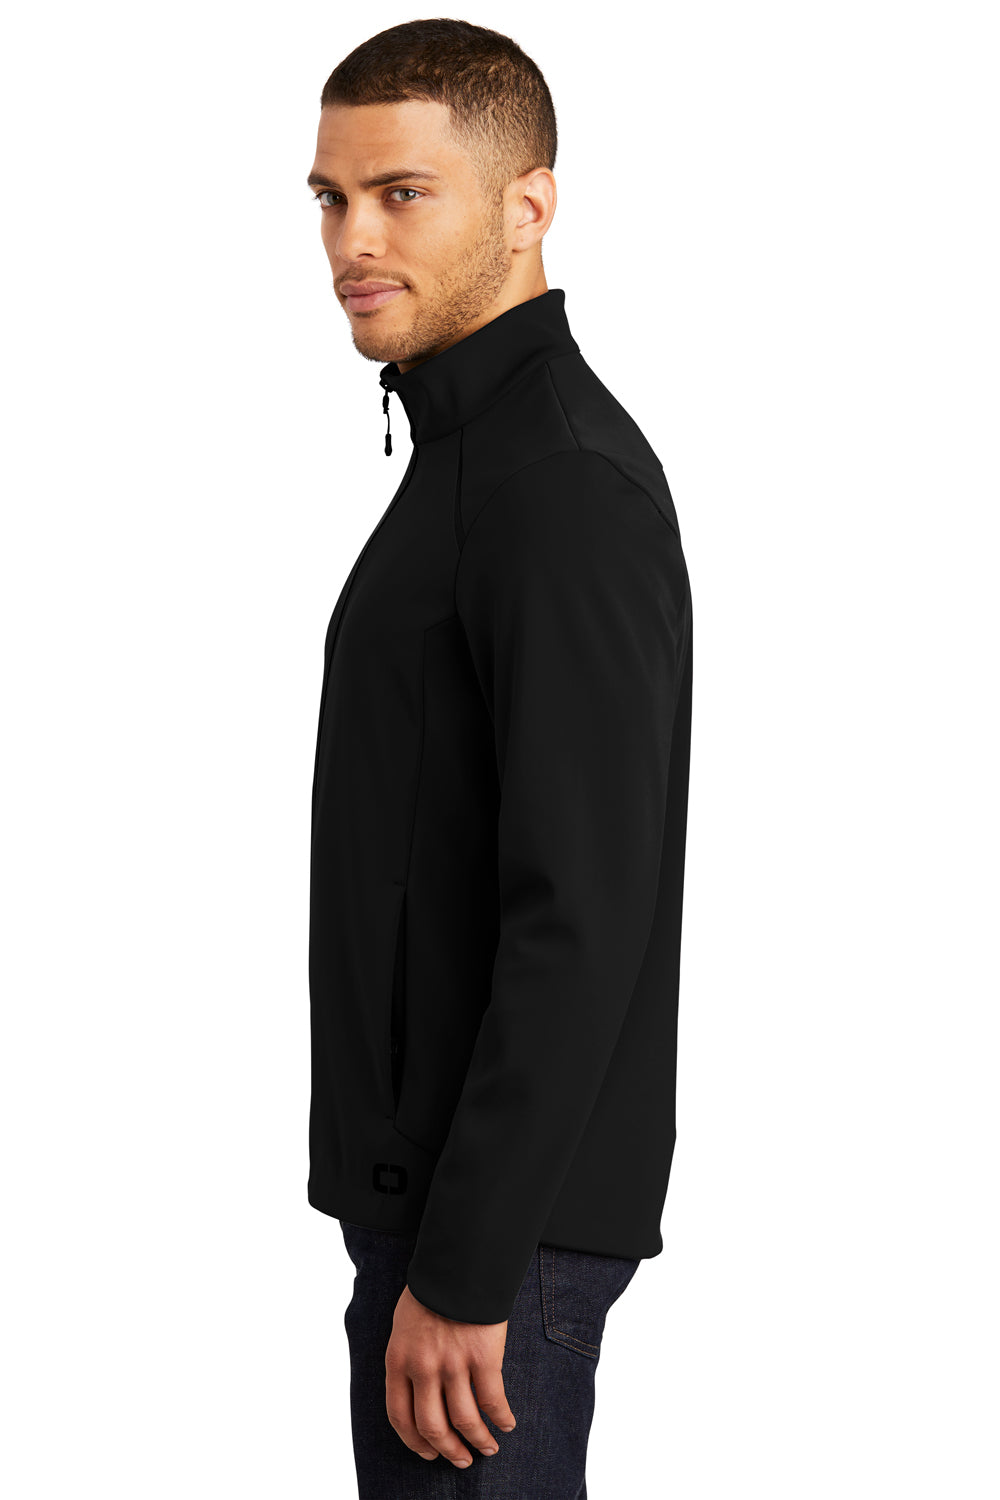 Ogio OG725 Mens Exaction Wind & Water Resistant Full Zip Jacket Black Side